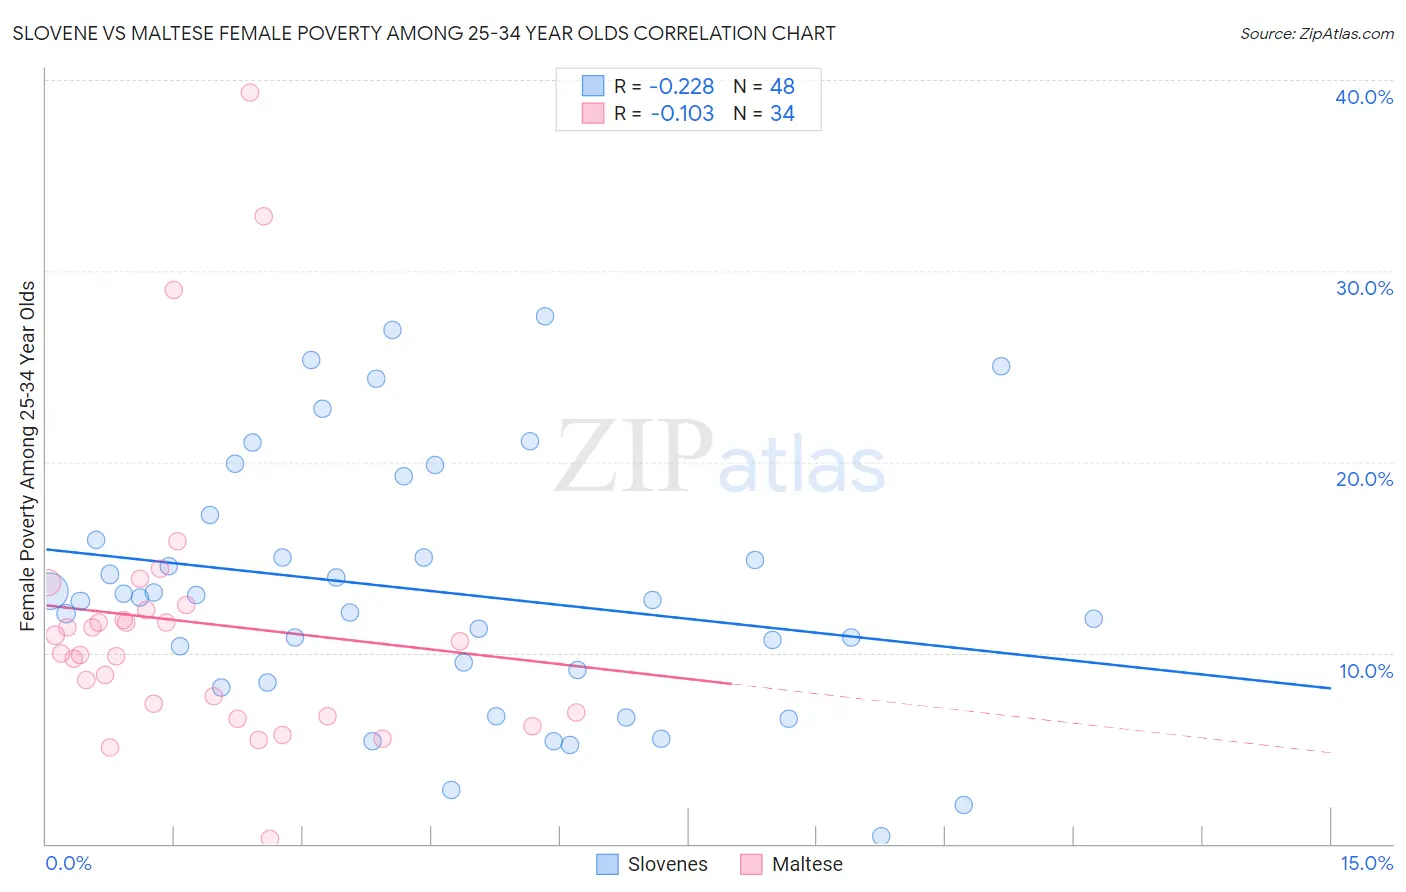 Slovene vs Maltese Female Poverty Among 25-34 Year Olds